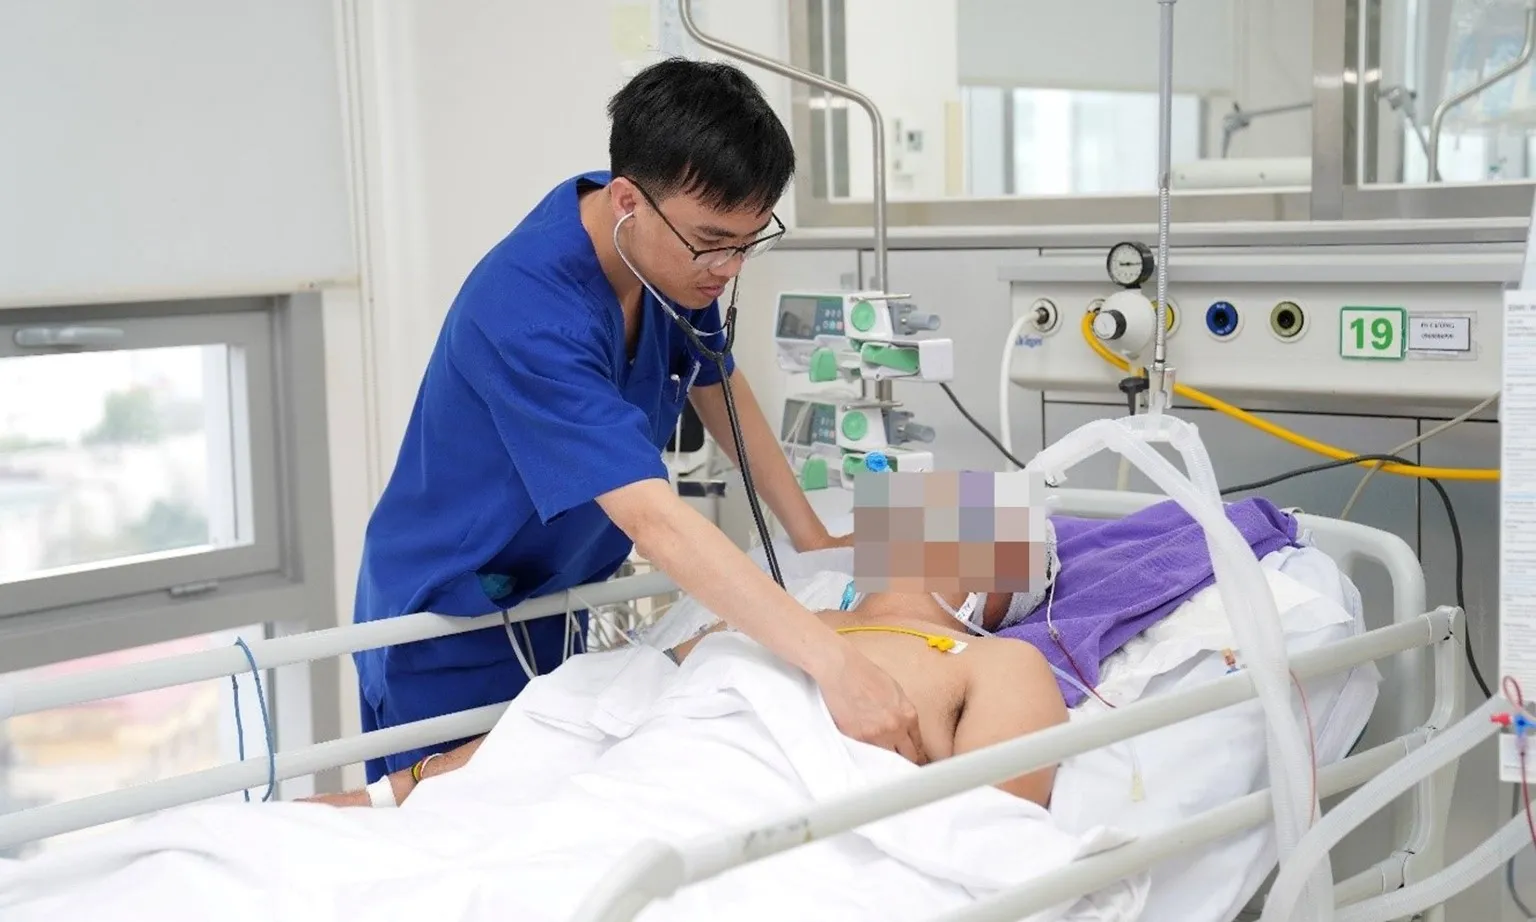 Việt Nam phấn đấu có 15 bác sĩ trên 10.000 dân vào năm 2025